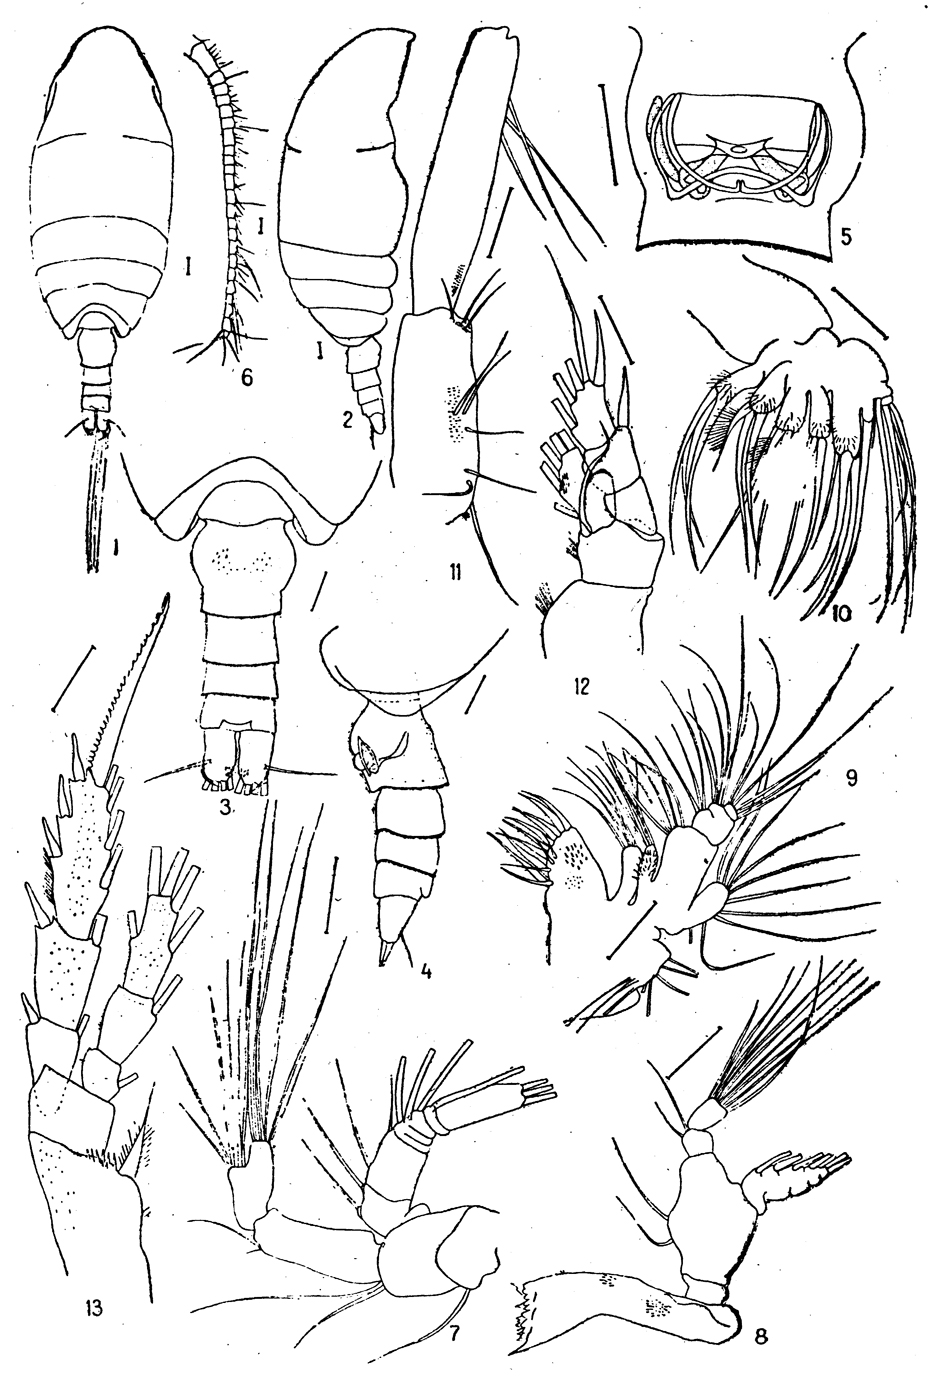 Espce Jaschnovia brevis - Planche 4 de figures morphologiques